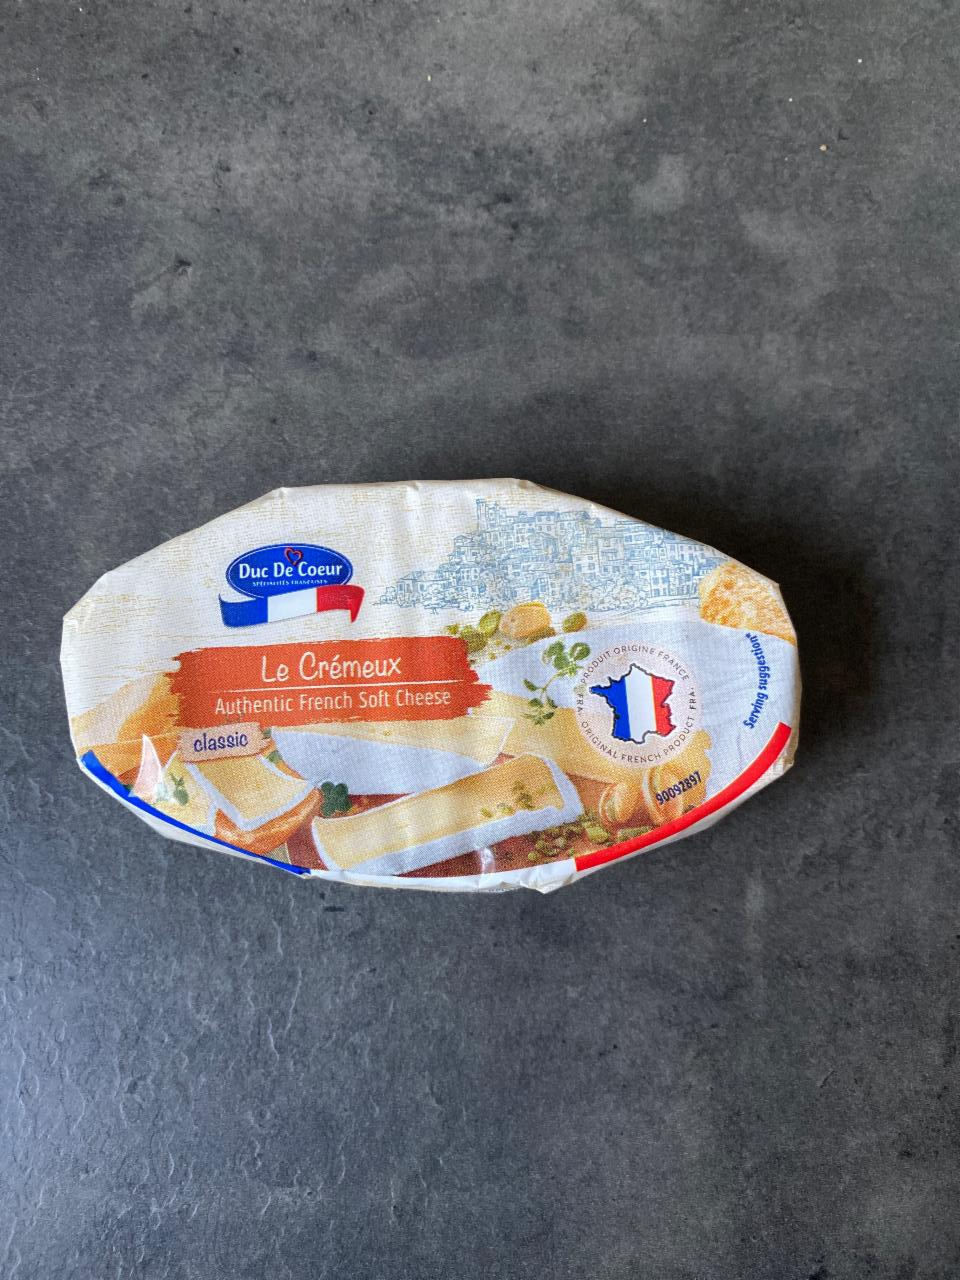 Képek - Fehér nemespenésszel érő zsírdús lágy sajt Duc de coeur